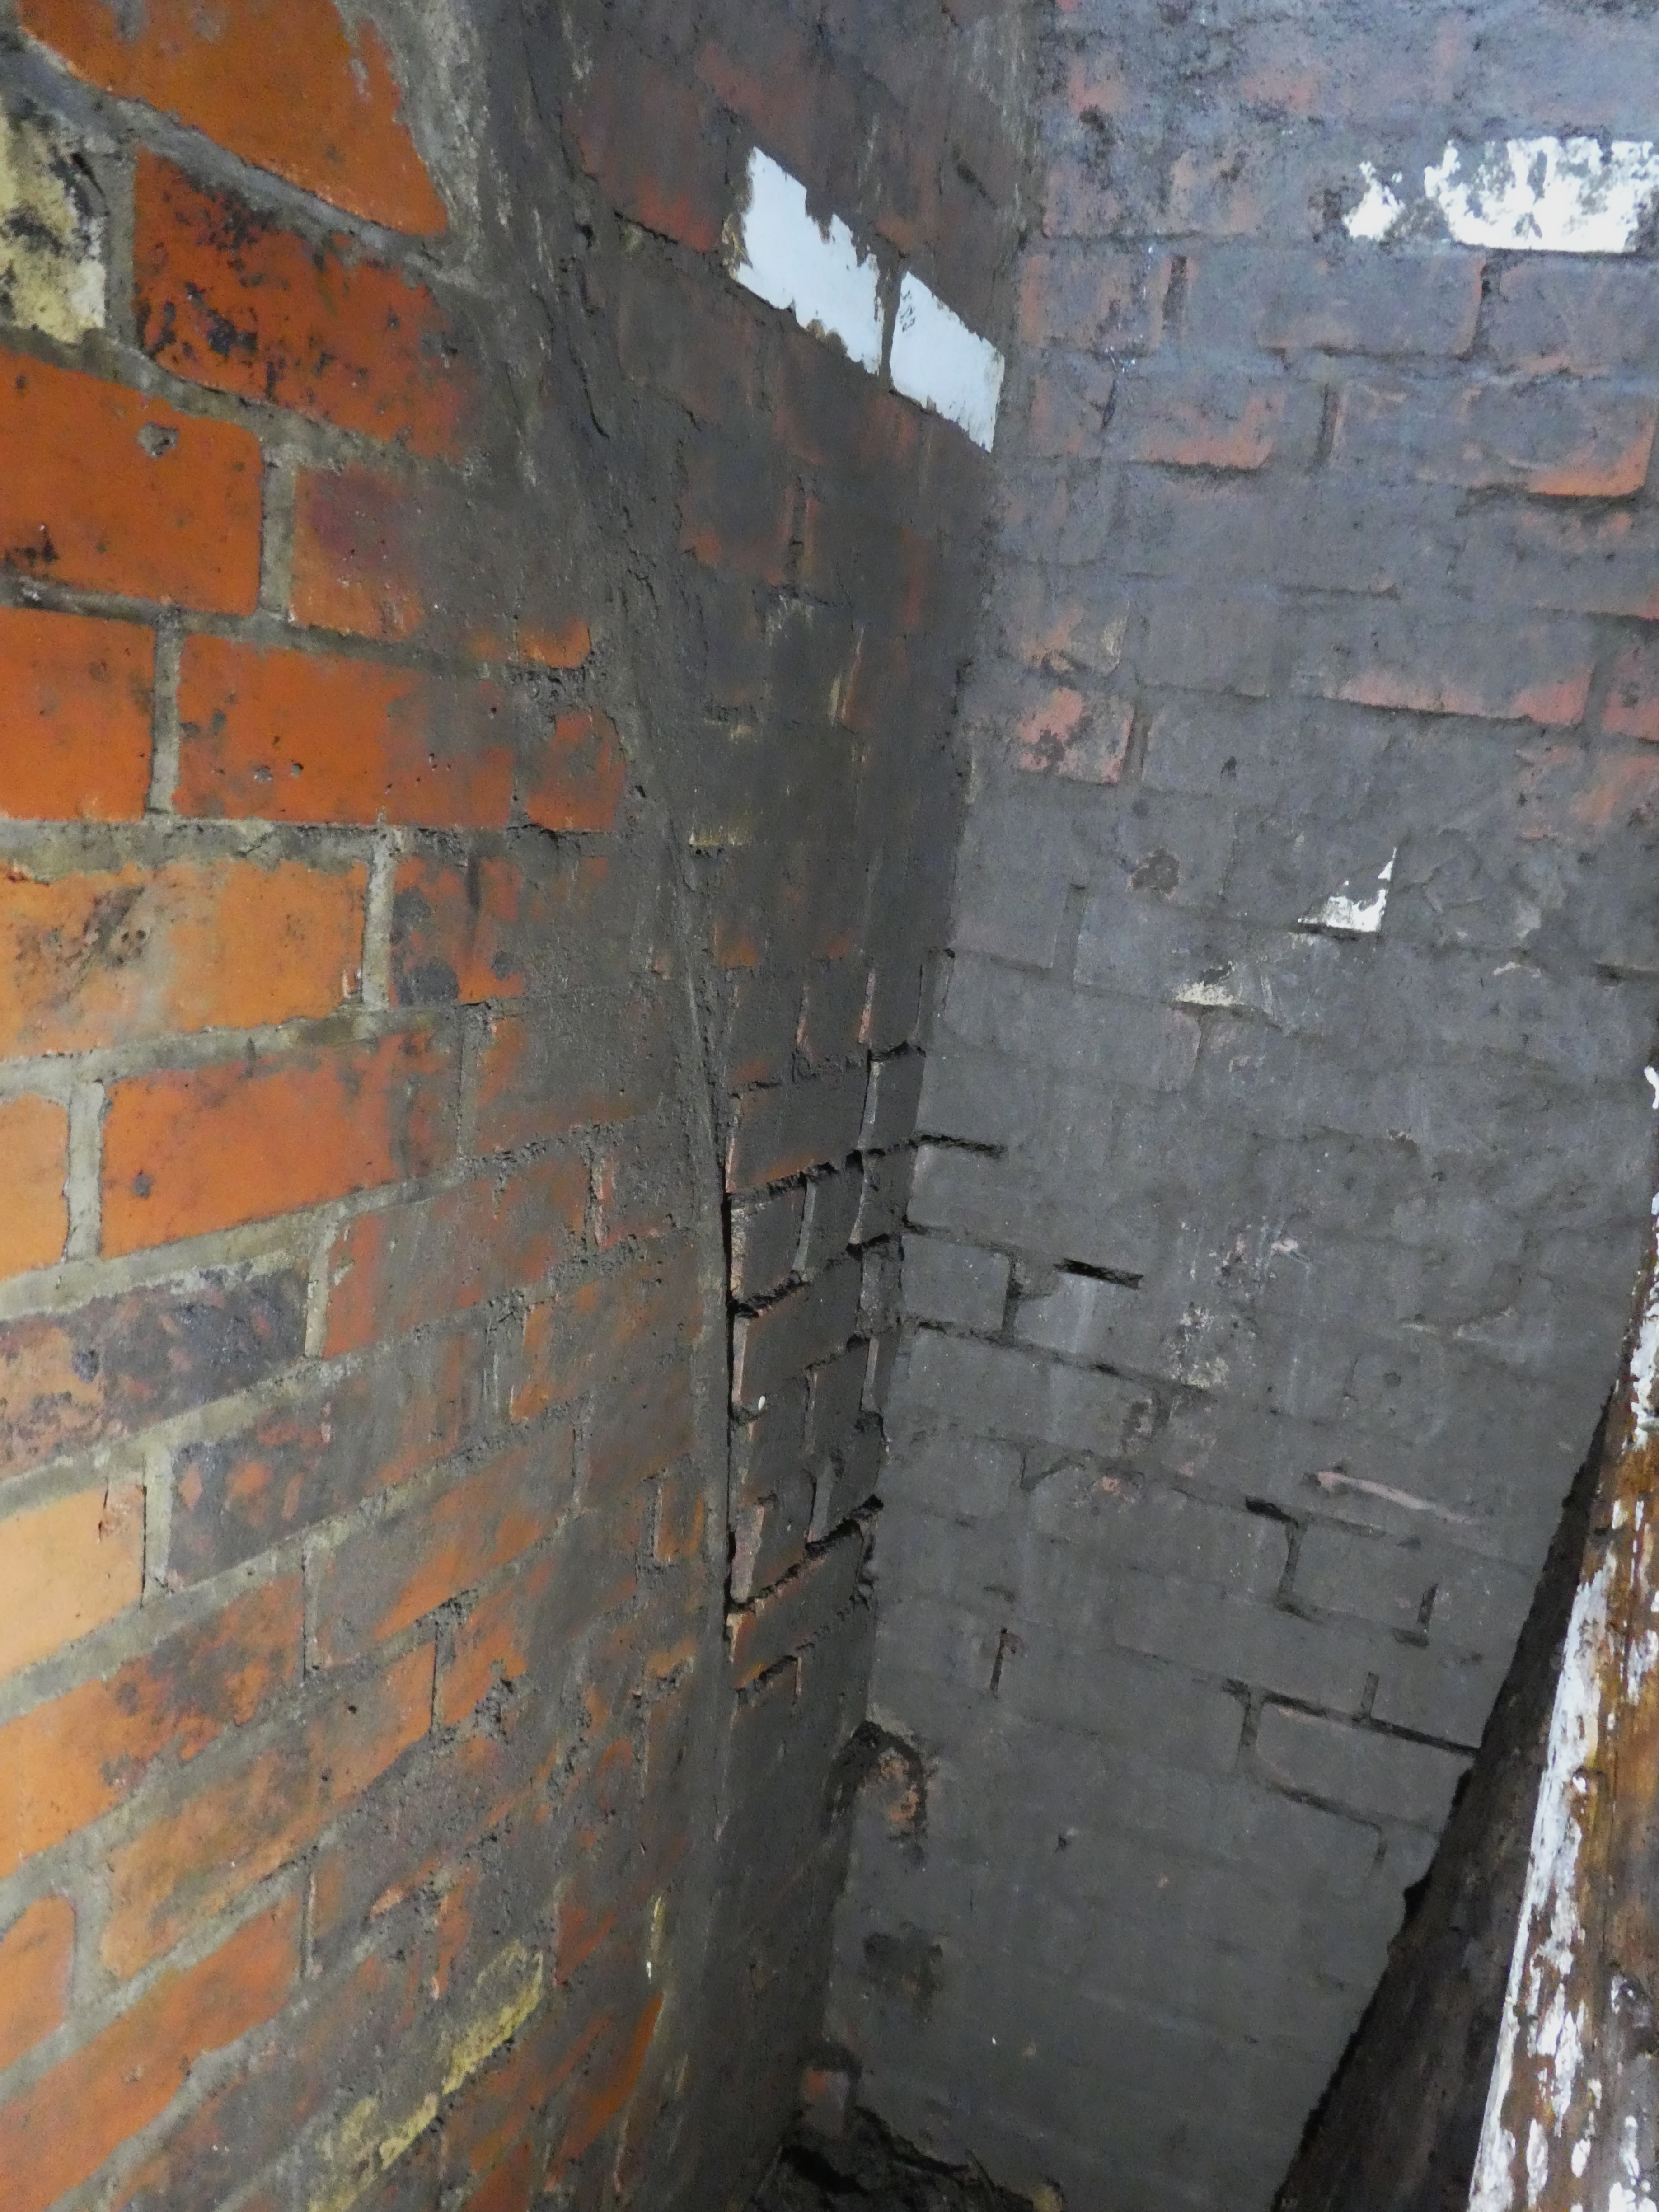 Marksbury OB entrance shaft - note white glazed bricks